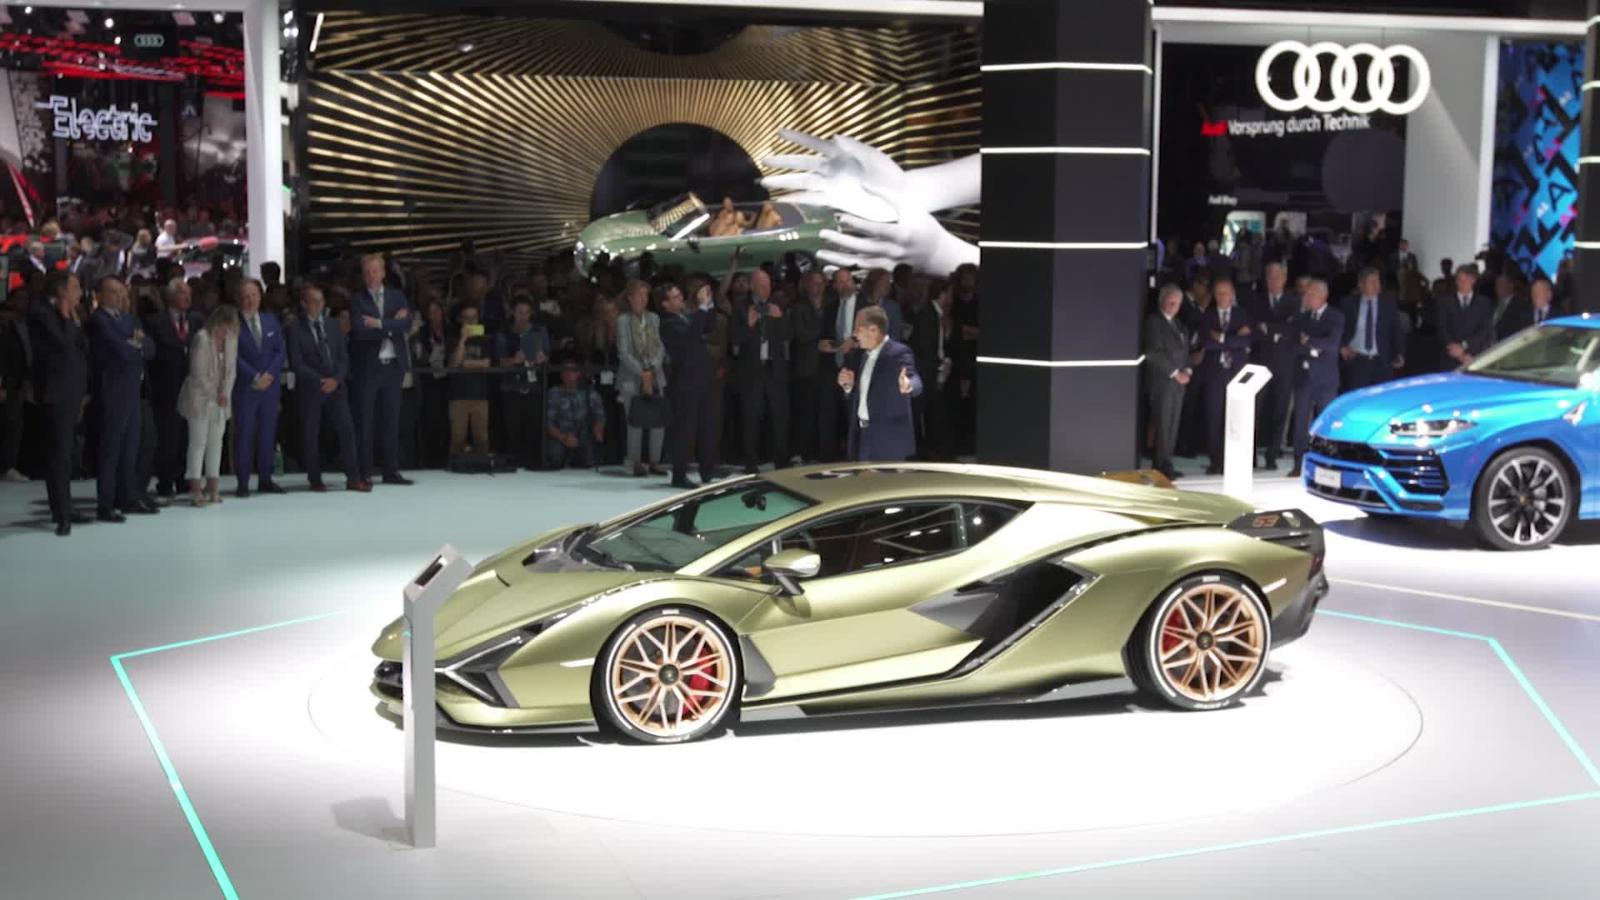 Lamborghini ingresa al mercado de los eléctricos con un superauto híbrido |  Video | CNN